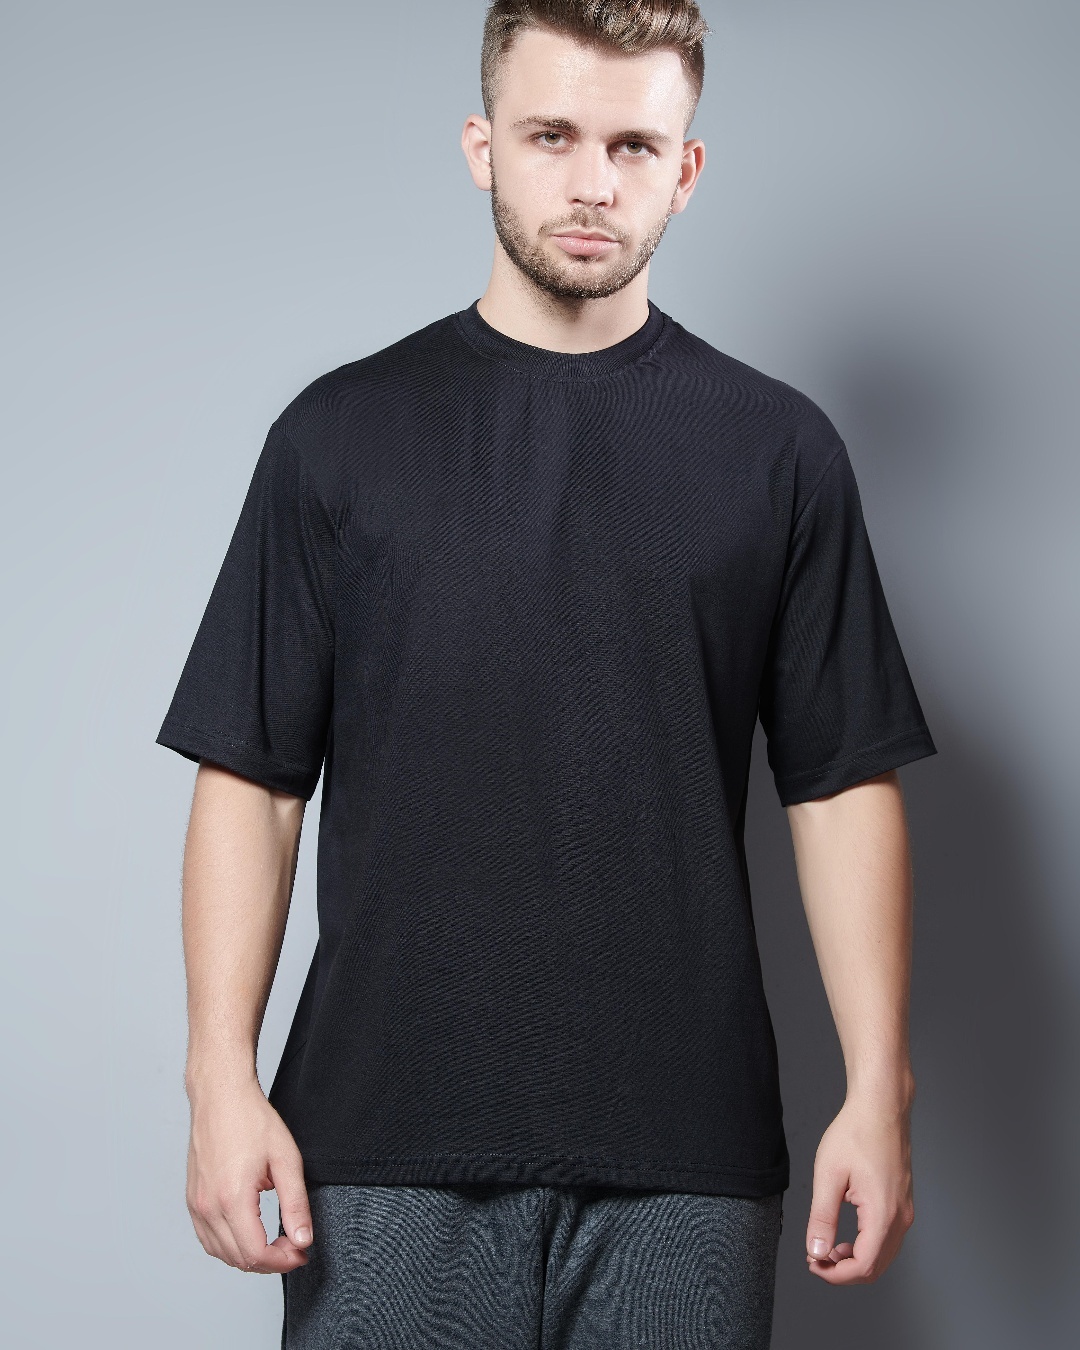 Buy Men's Black Oversized T-shirt Online at Bewakoof